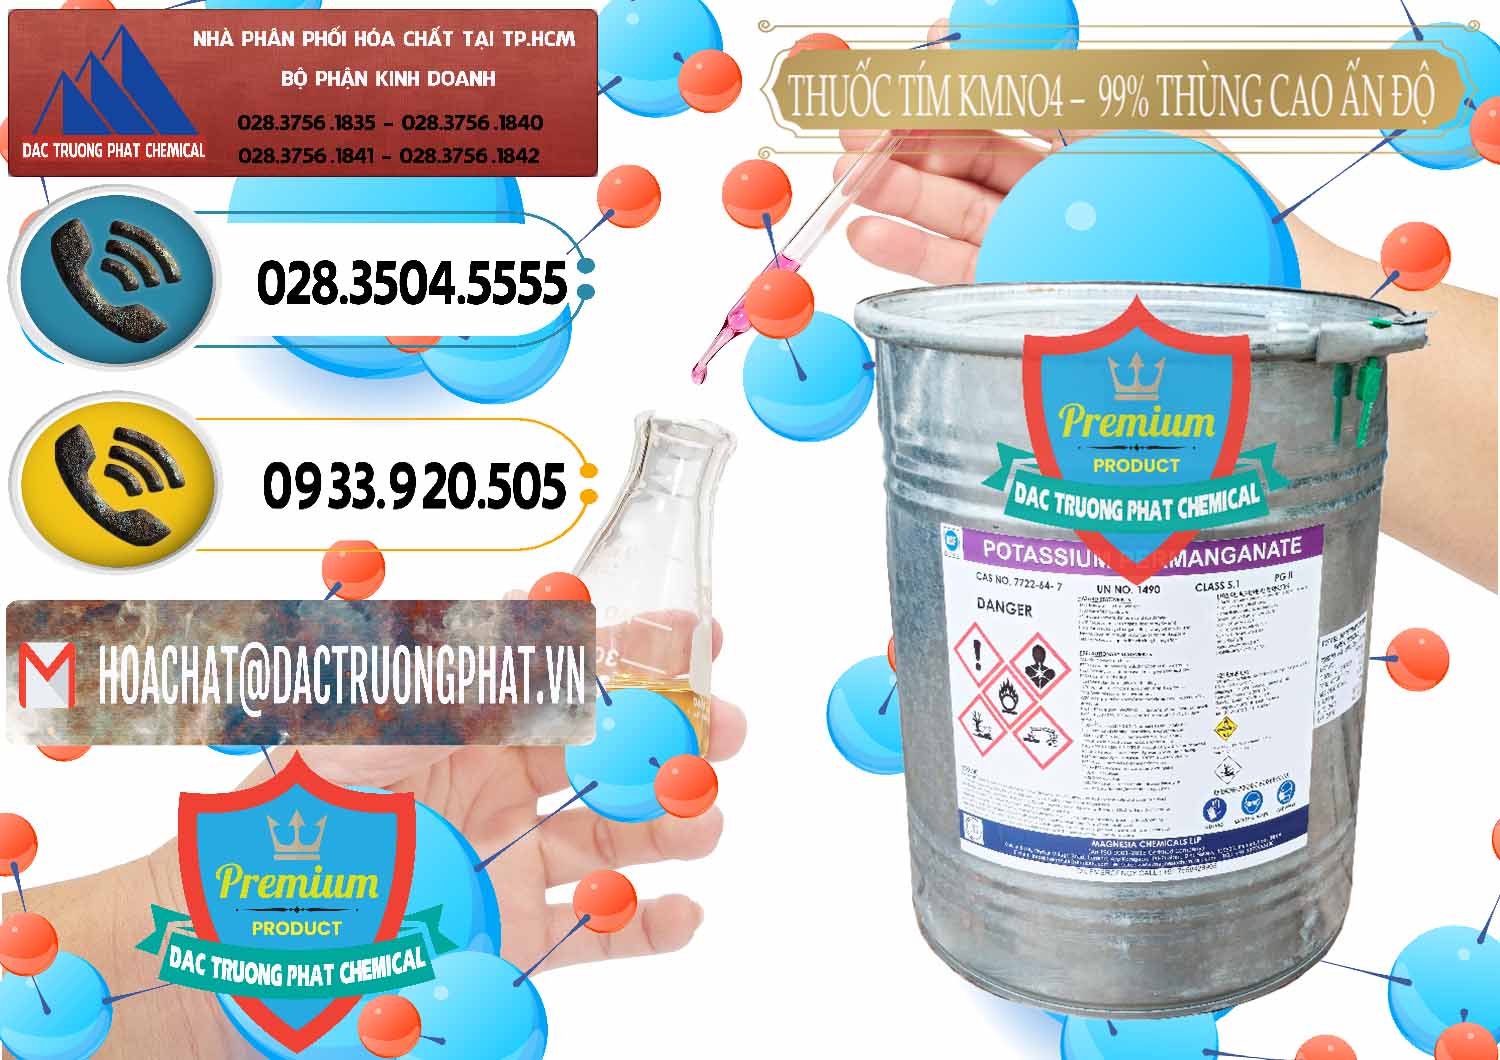 Nơi chuyên bán và cung cấp Thuốc Tím - KMNO4 Thùng Cao 99% Magnesia Chemicals Ấn Độ India - 0164 - Nhà phân phối - nhập khẩu hóa chất tại TP.HCM - hoachatdetnhuom.vn